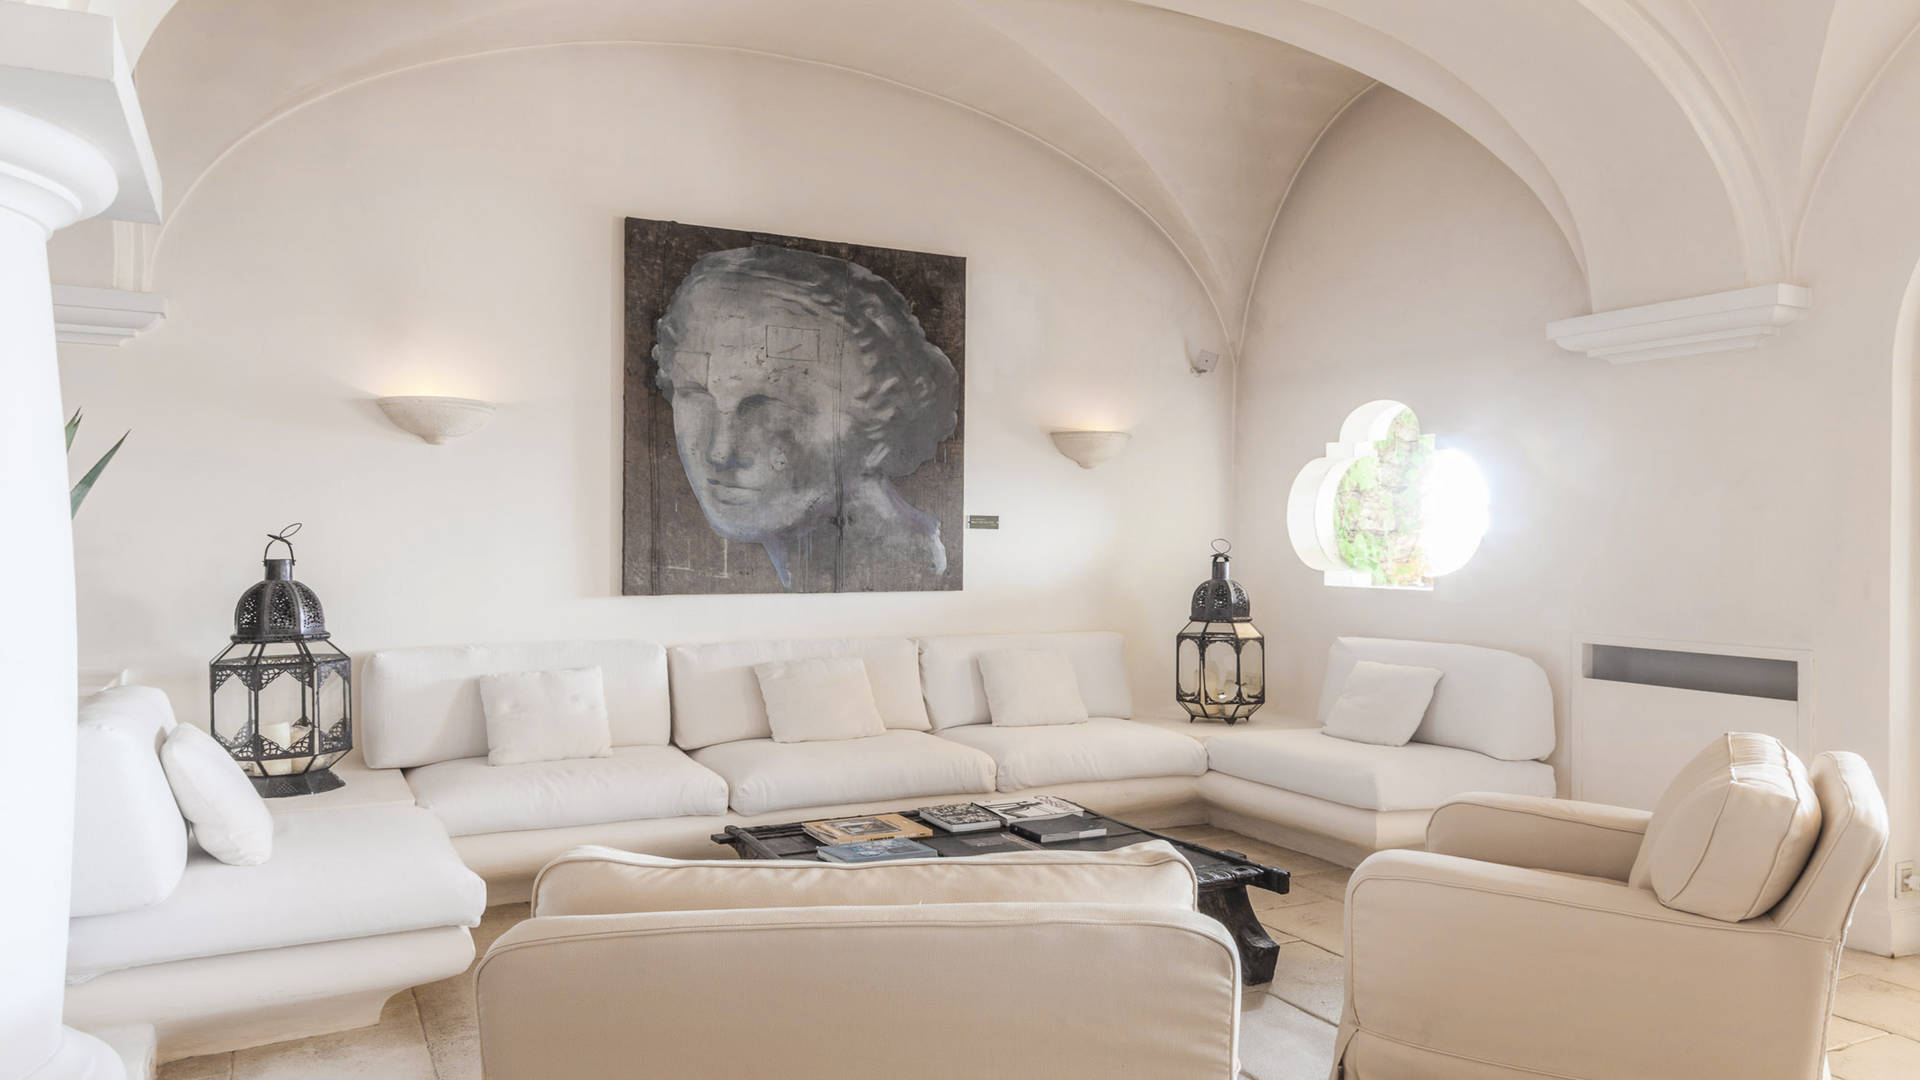 Artisti Lounge at Capri Palace Jumeirah